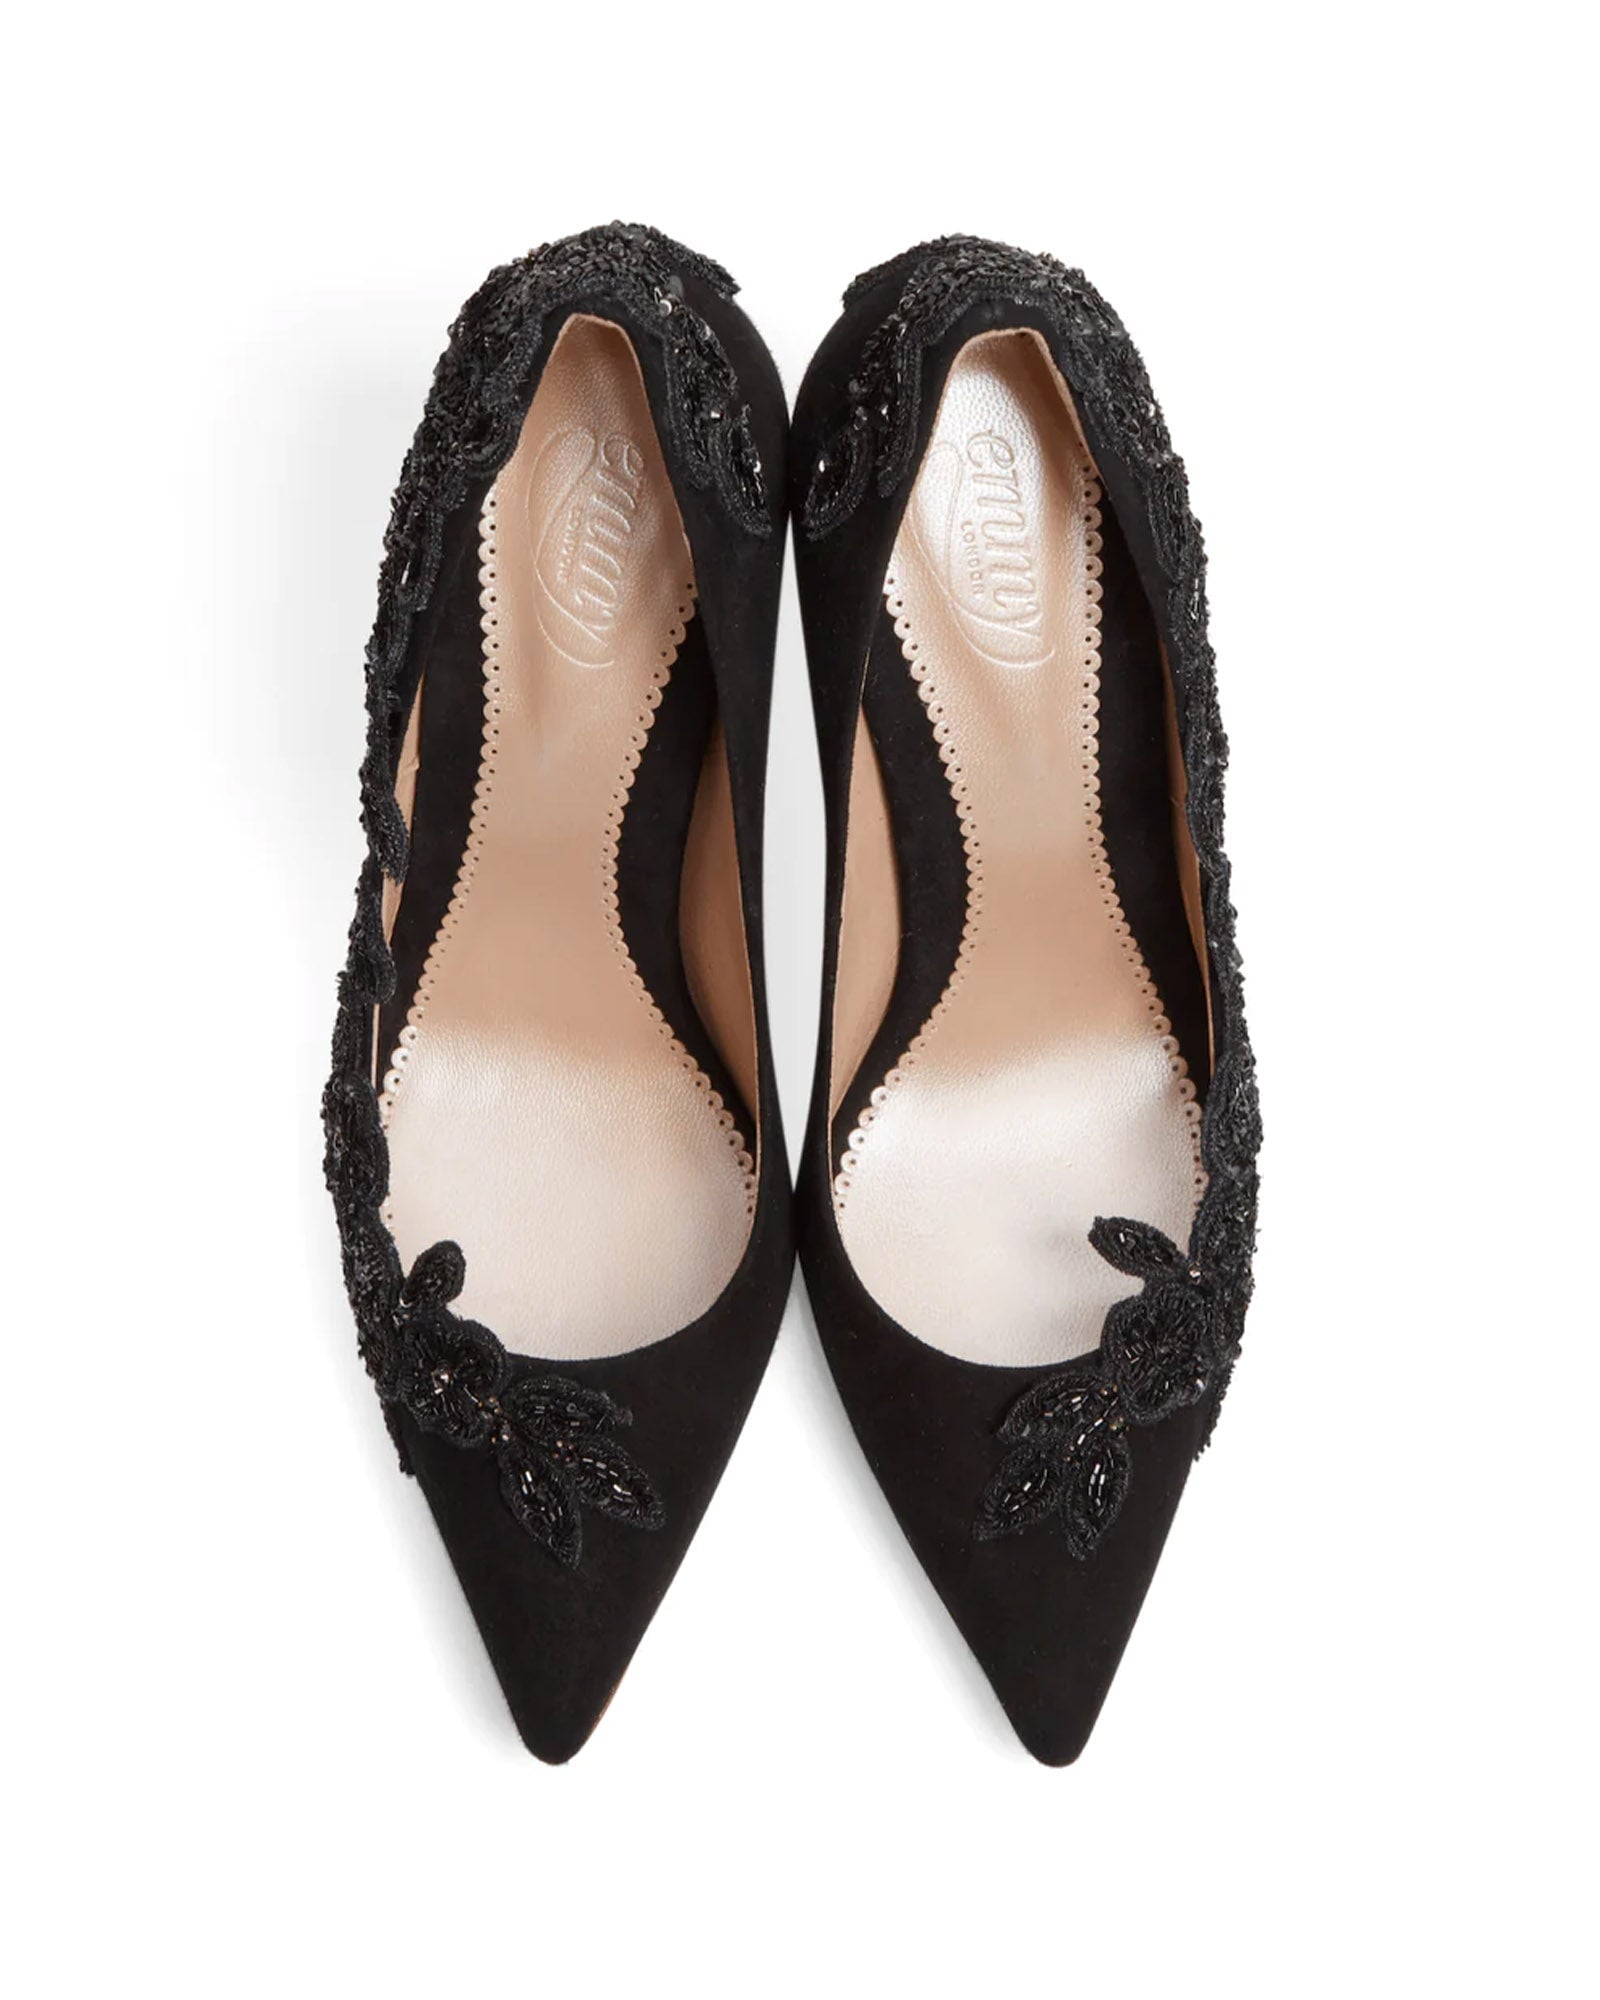 Isadora Jet Black Fashion Shoe Floral Embellished Shoe  image